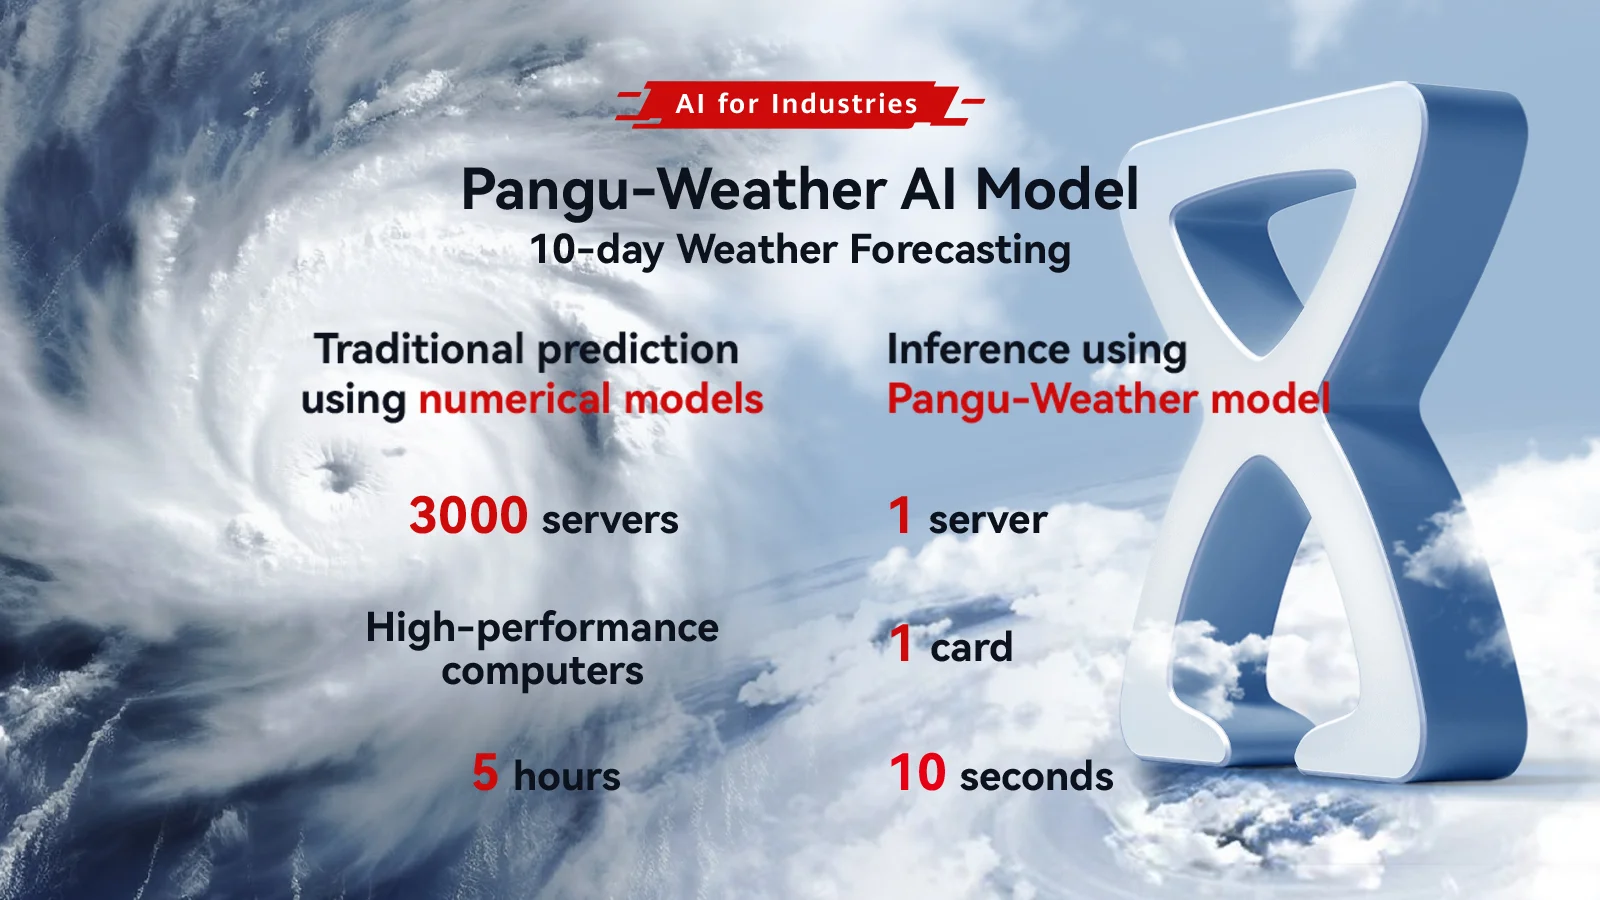 Європейська метеорологічна агенція обирає Pangu-Weather від Huawei Cloud для точного прогнозу погоди